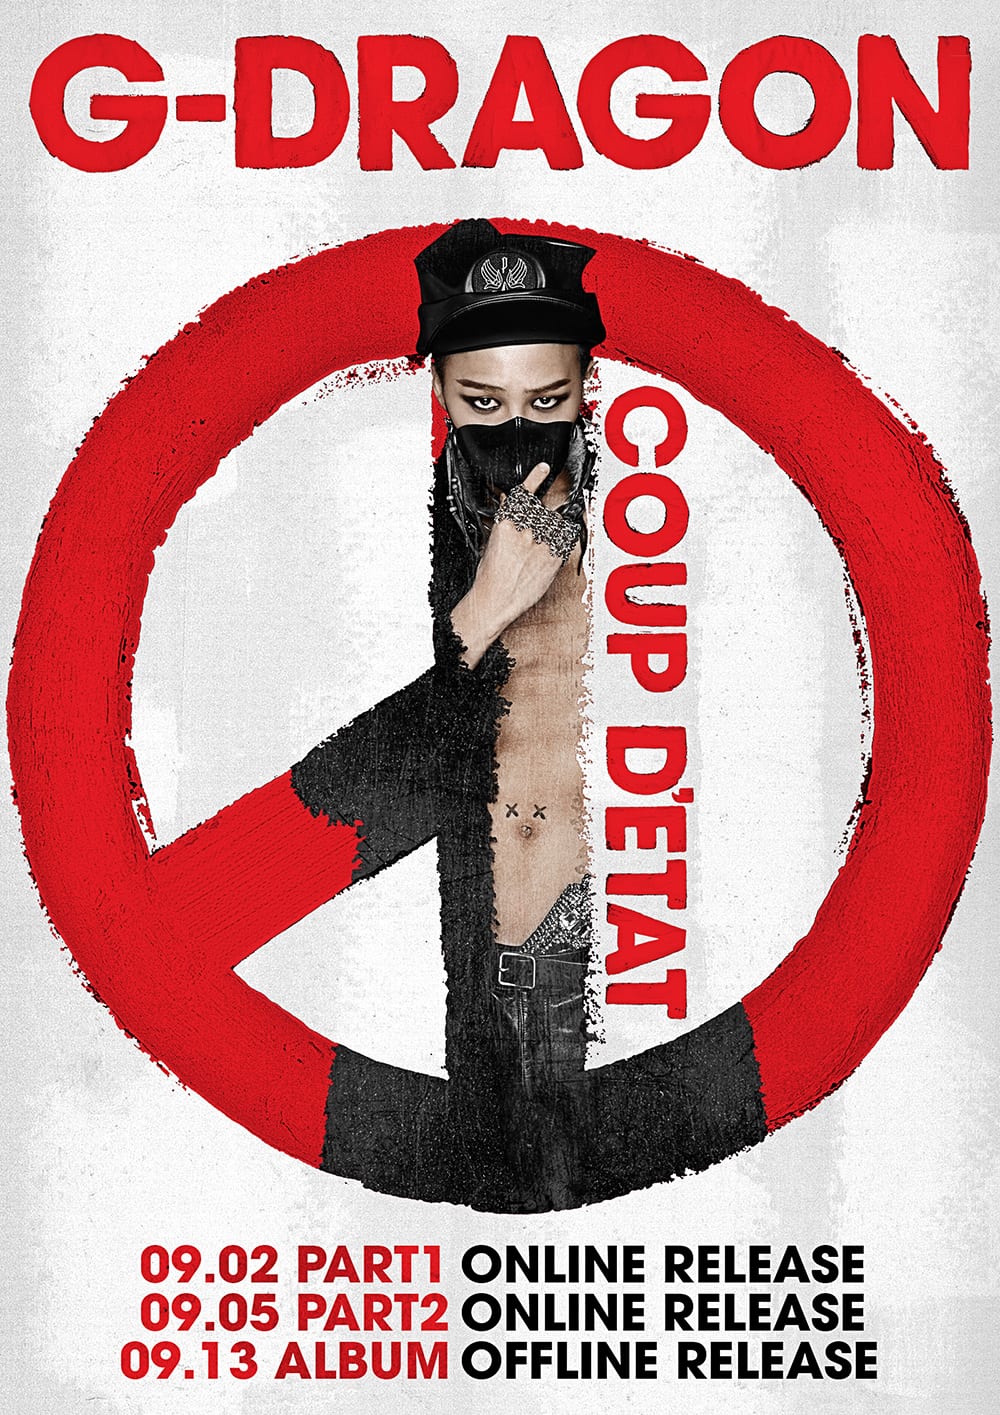 G-Dragon - Coup D'Etat releases